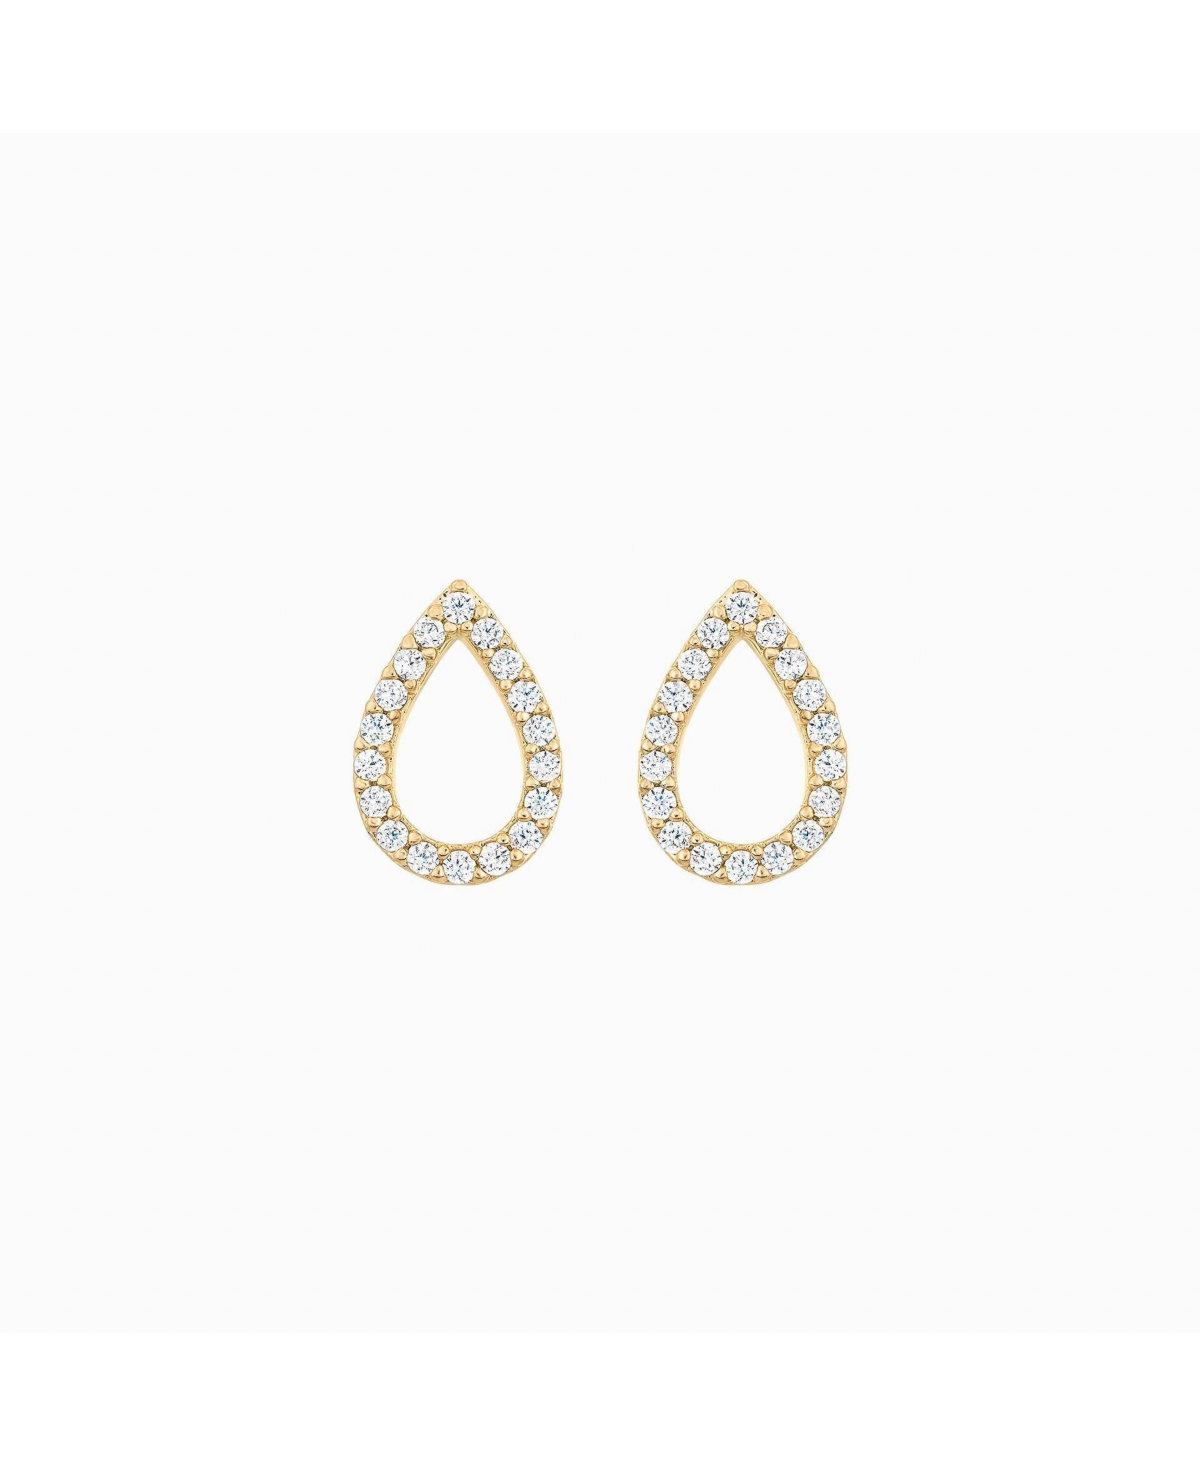 Livia Teardrop Stud Earrings - Yellow gold